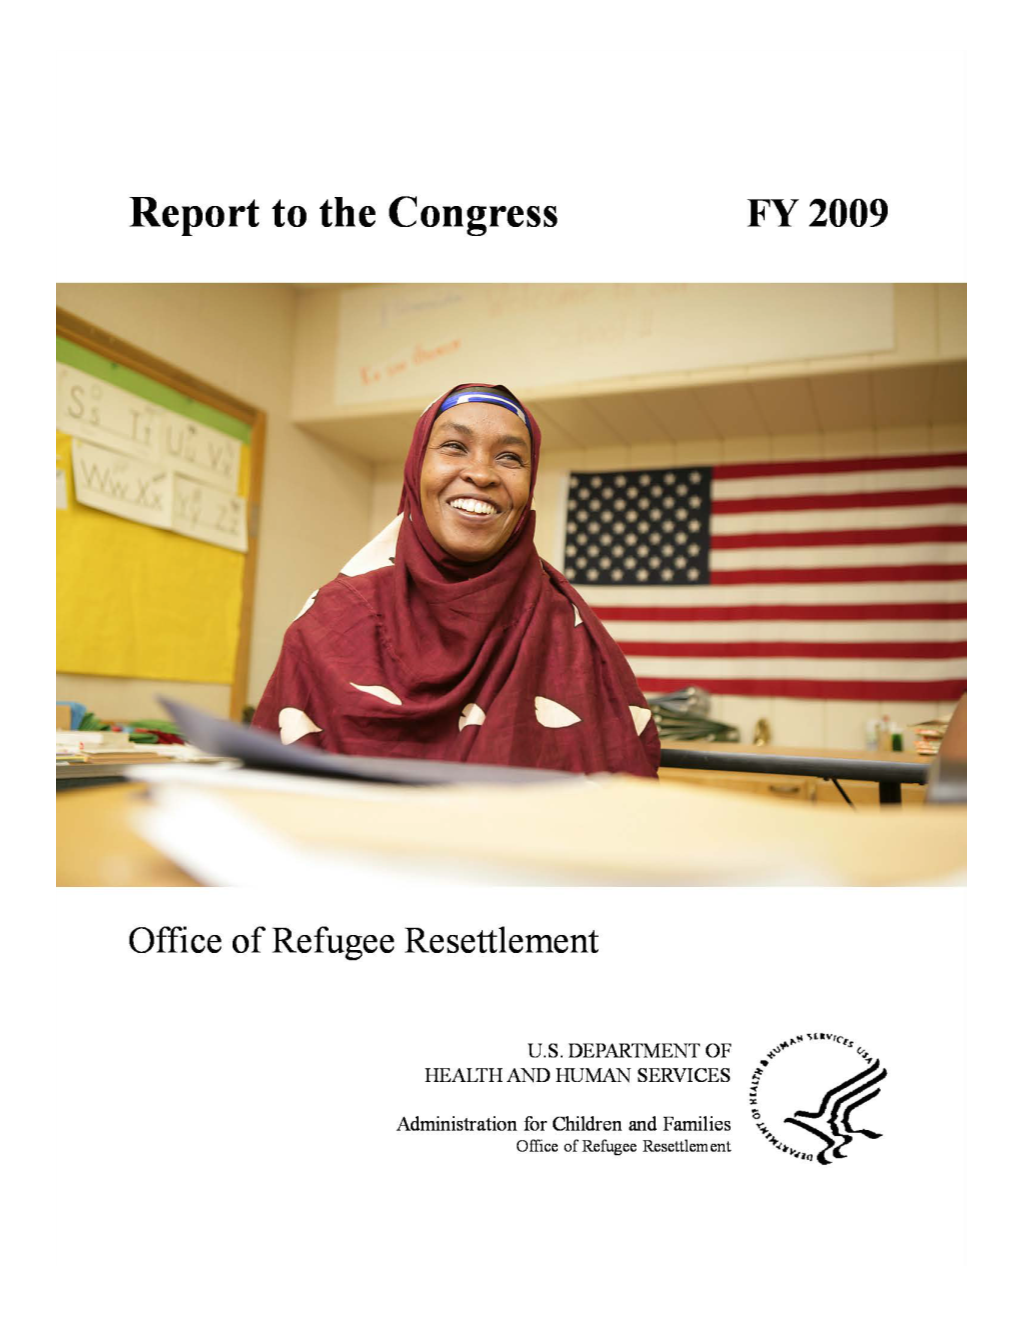 Refugee Resettlement Program